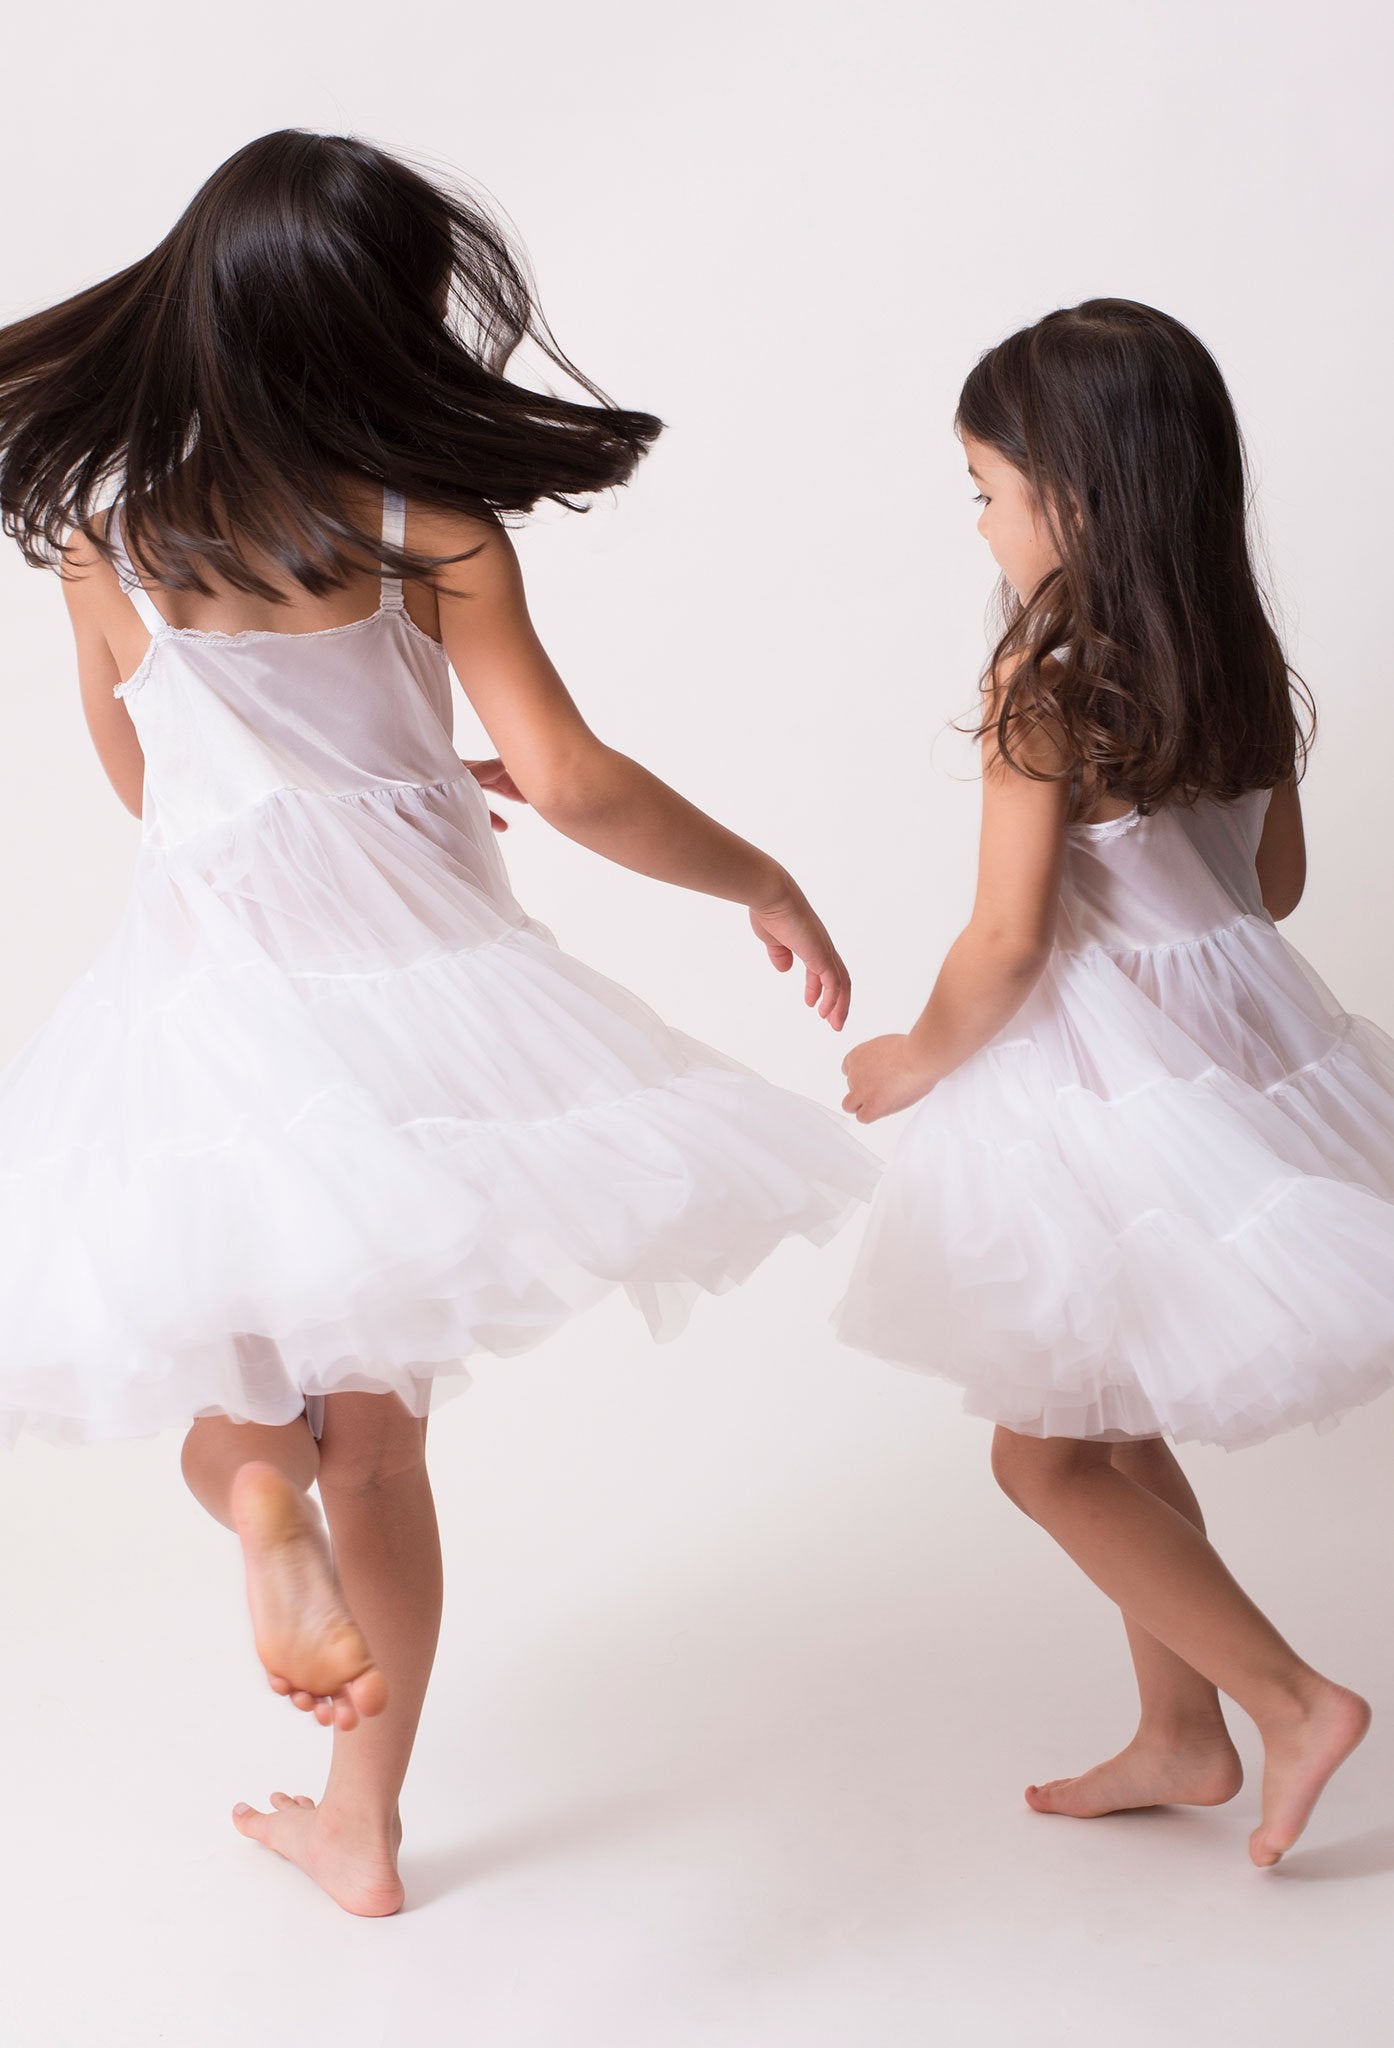 Girls slips, fun twirler slips great for our Classic Girl dresses.